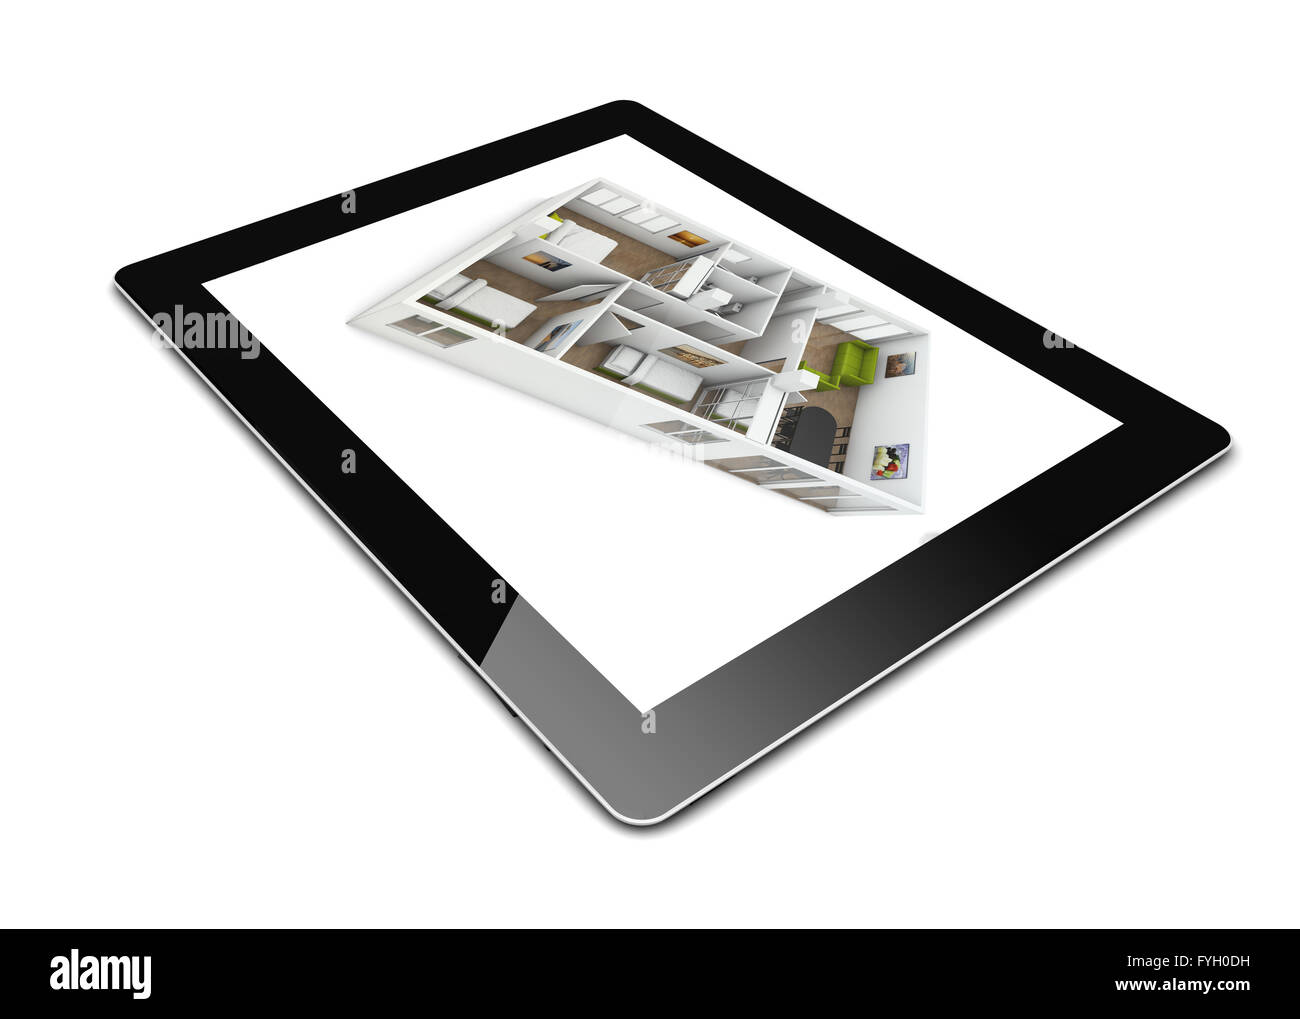 Design-Konzept: entwerfen eine Wohnung auf einem Tablet, isoliert auf weiss Stockfoto